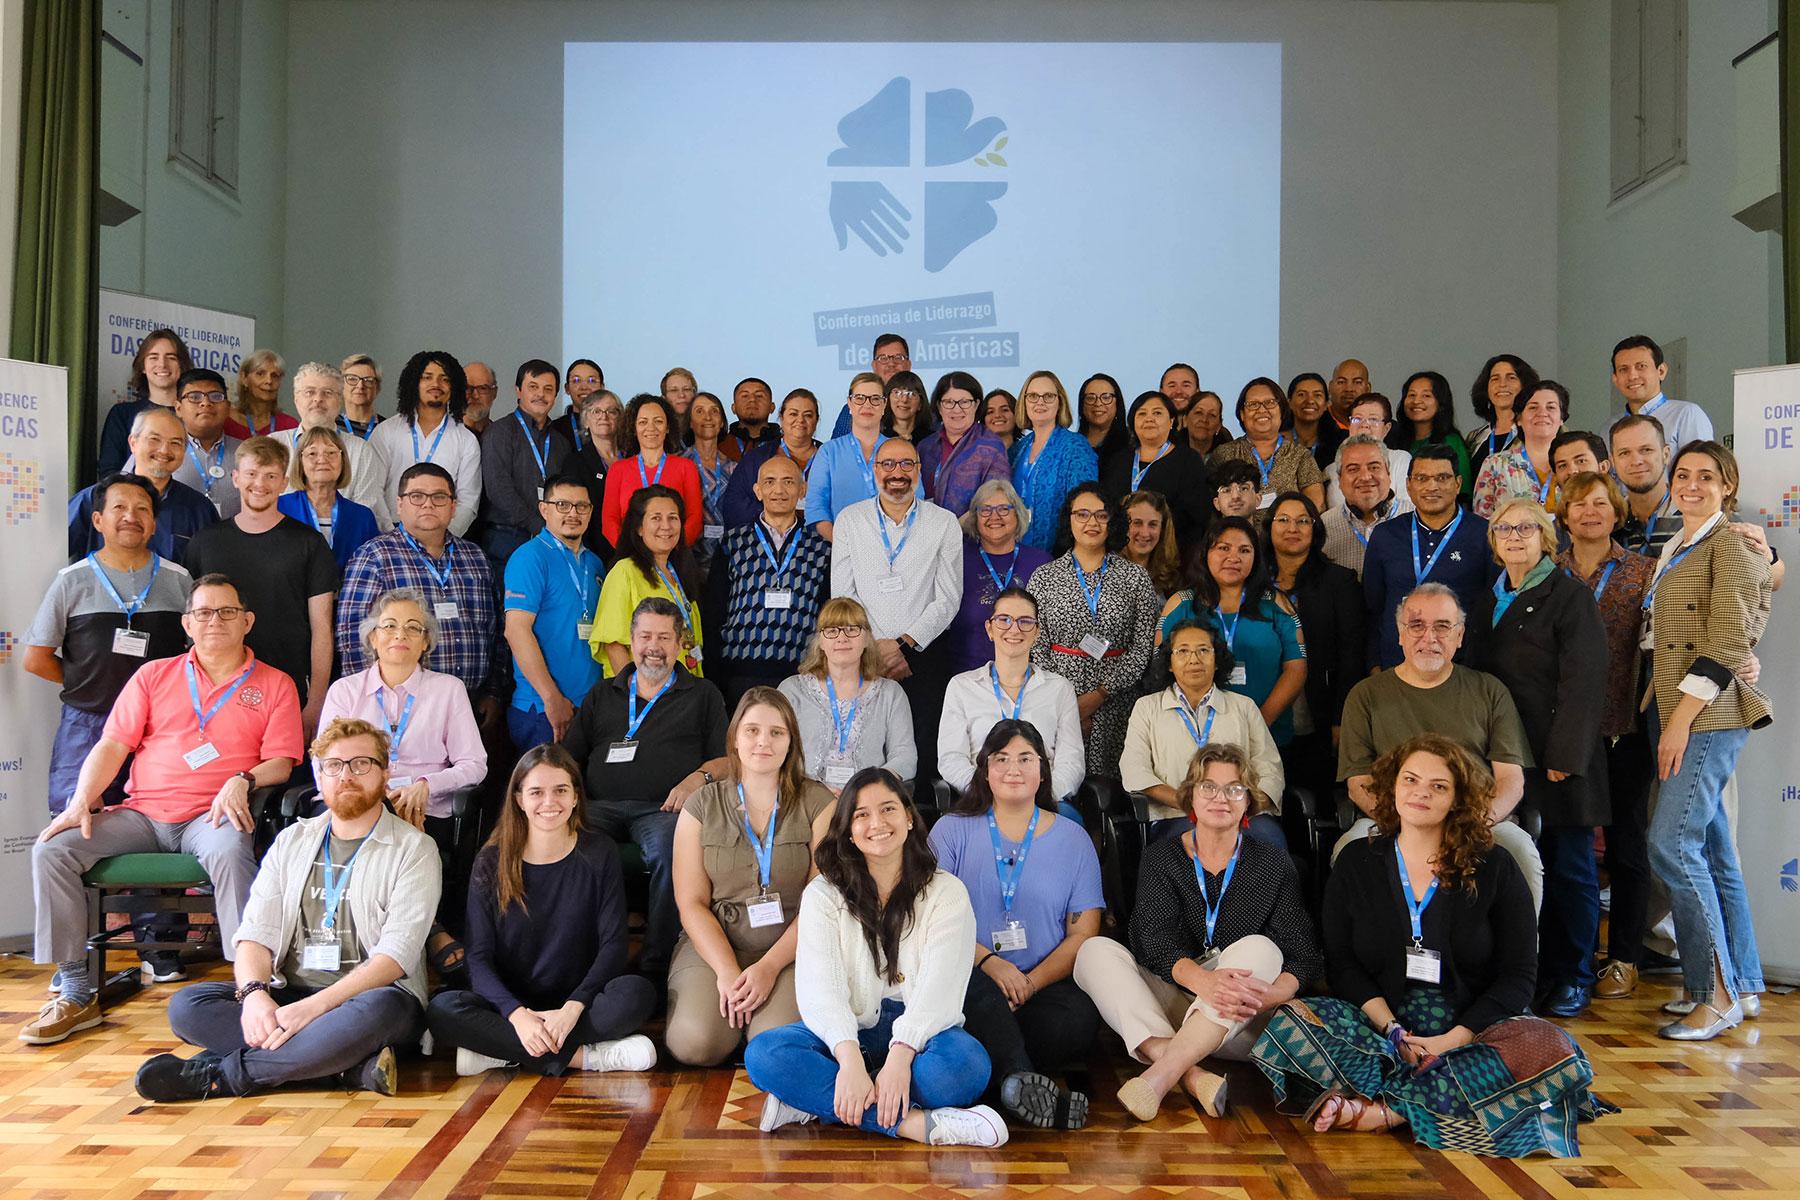 Teilnehmende der amerikanischen Kirchenleitungskonferenz in São Leopoldo, Brasilien